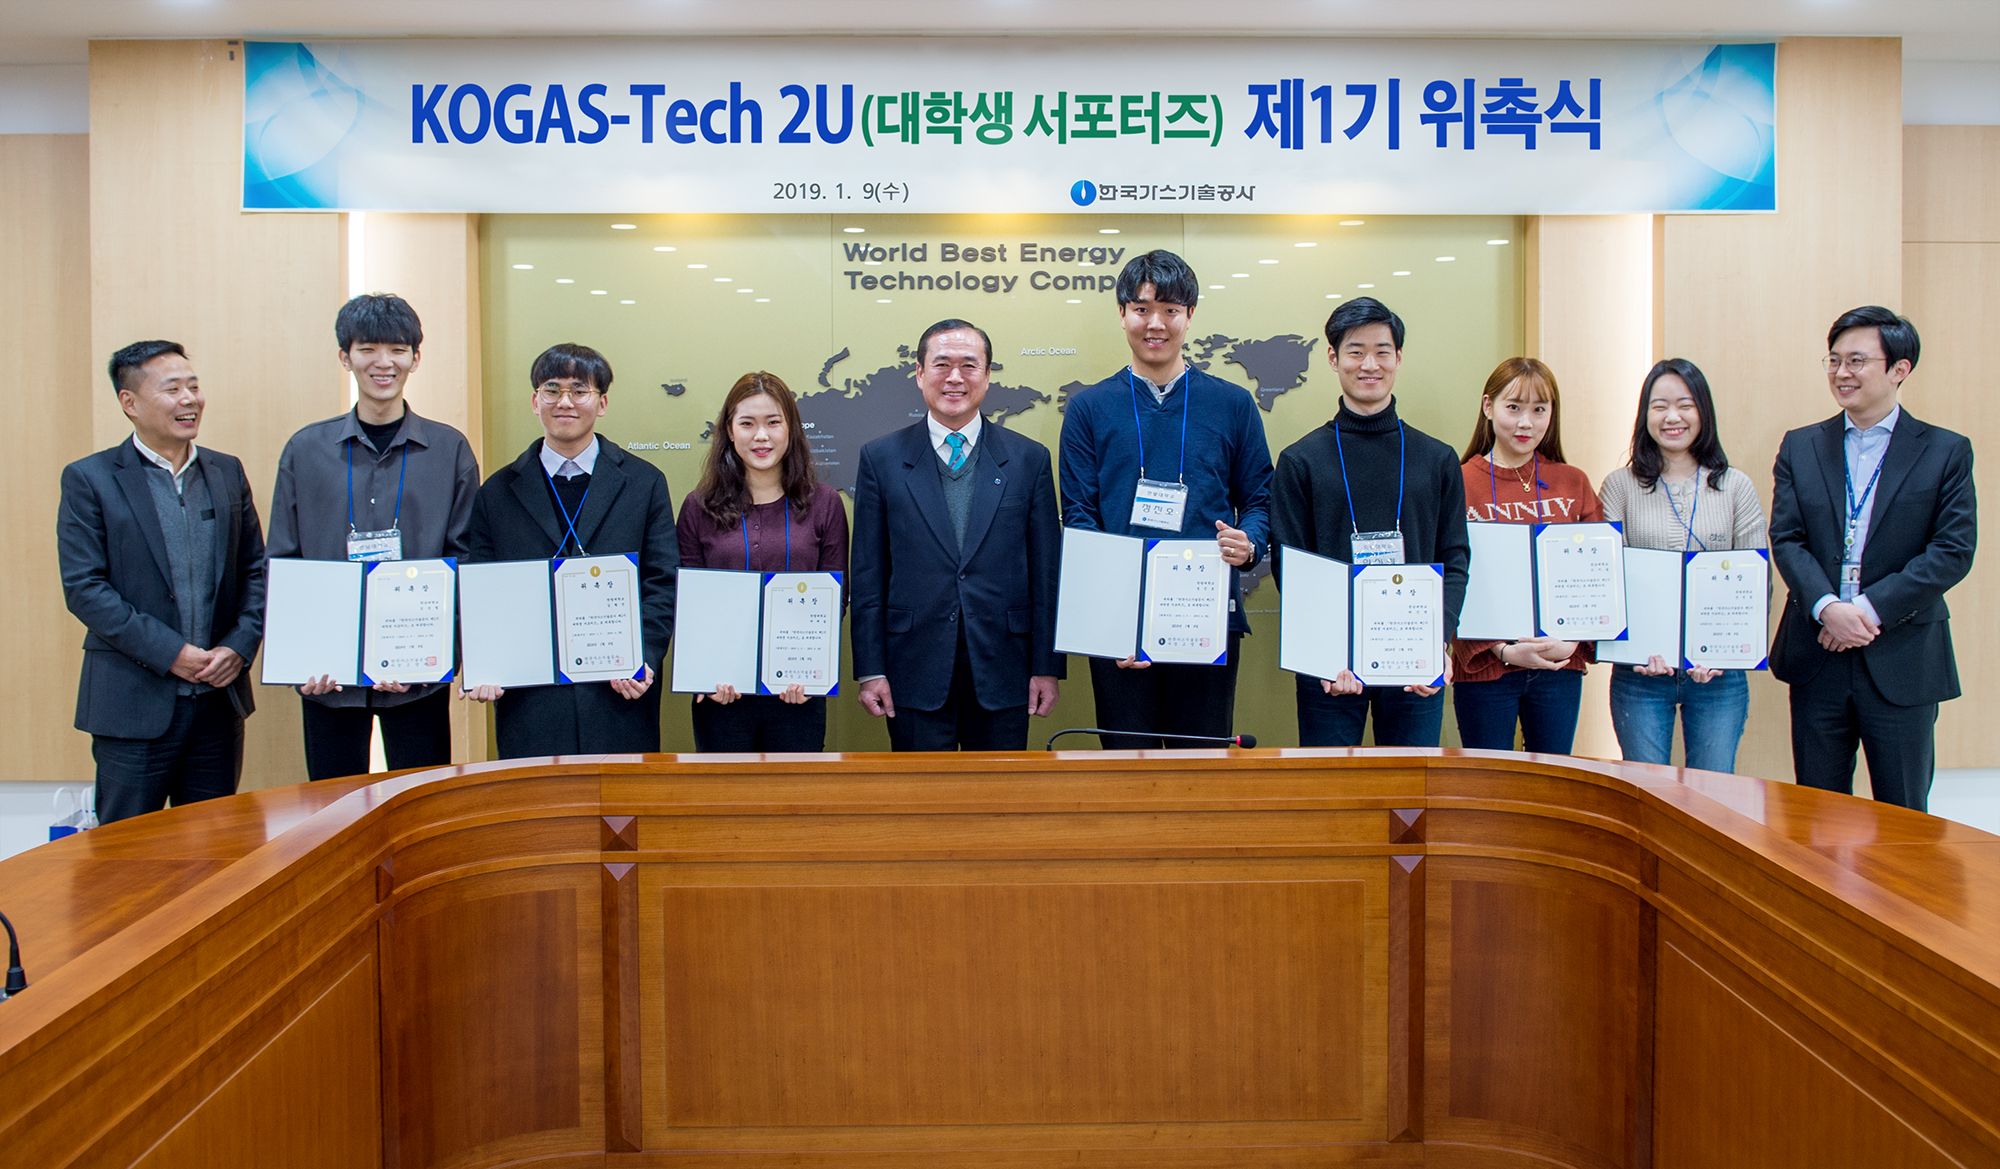 KOGAS-Tech 2U(대학생 서포터즈) 제1기 위촉식 개최